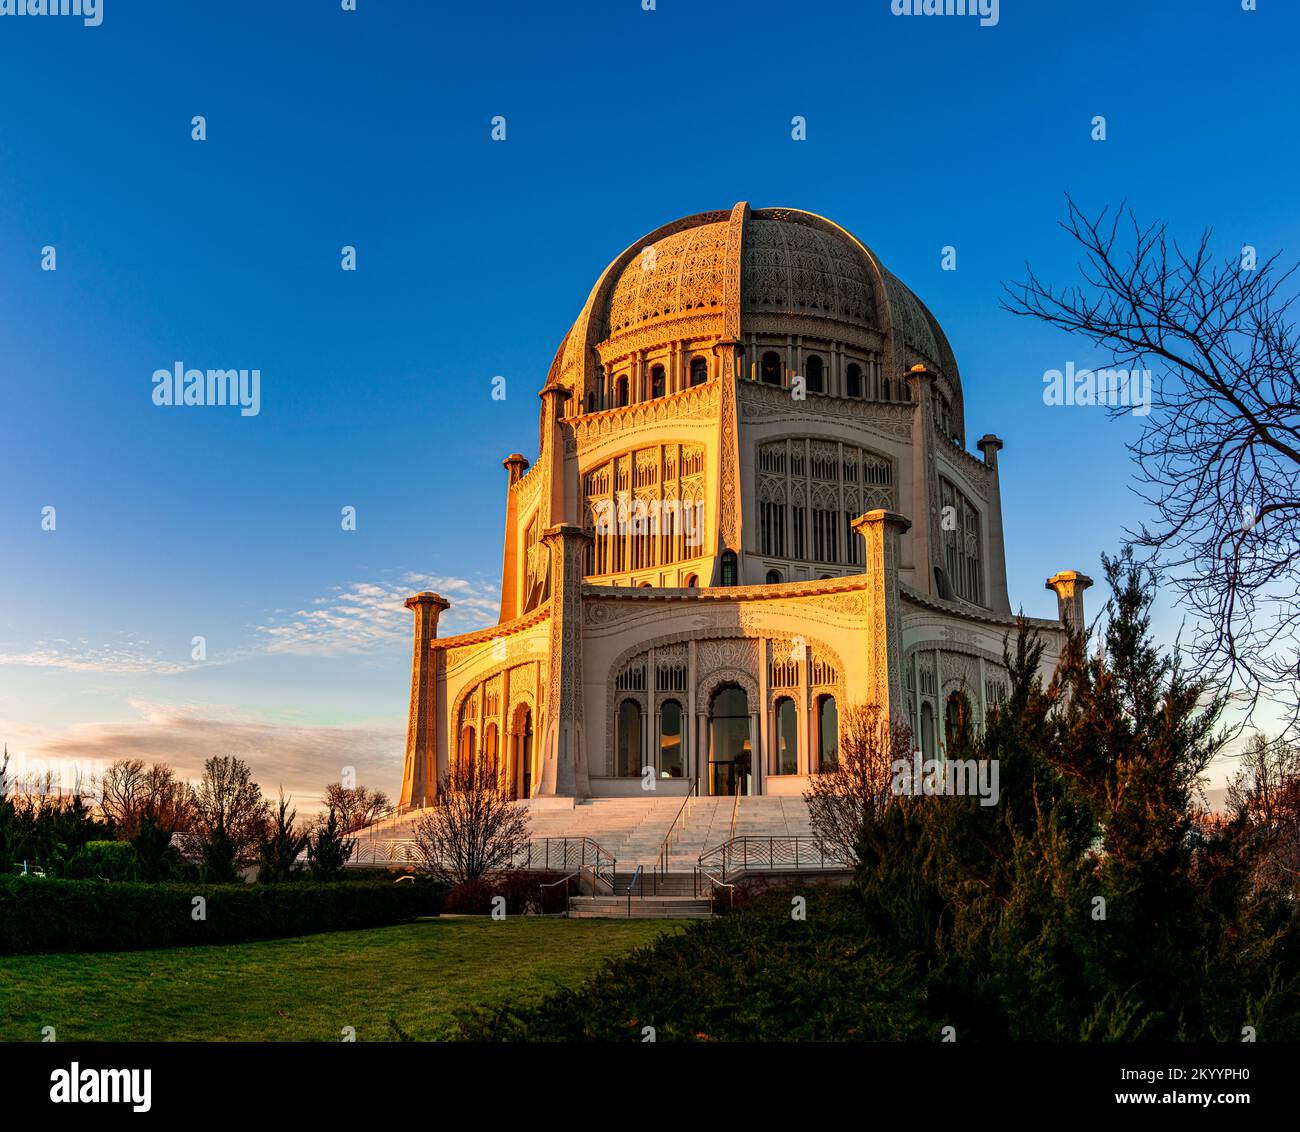 Wilmette, il, Stati Uniti - 1 dicembre 2022: Casa di culto Bahá'í situata a Wilmette, Illinois, durante le ore di tramonto di una giornata invernale. Foto Stock